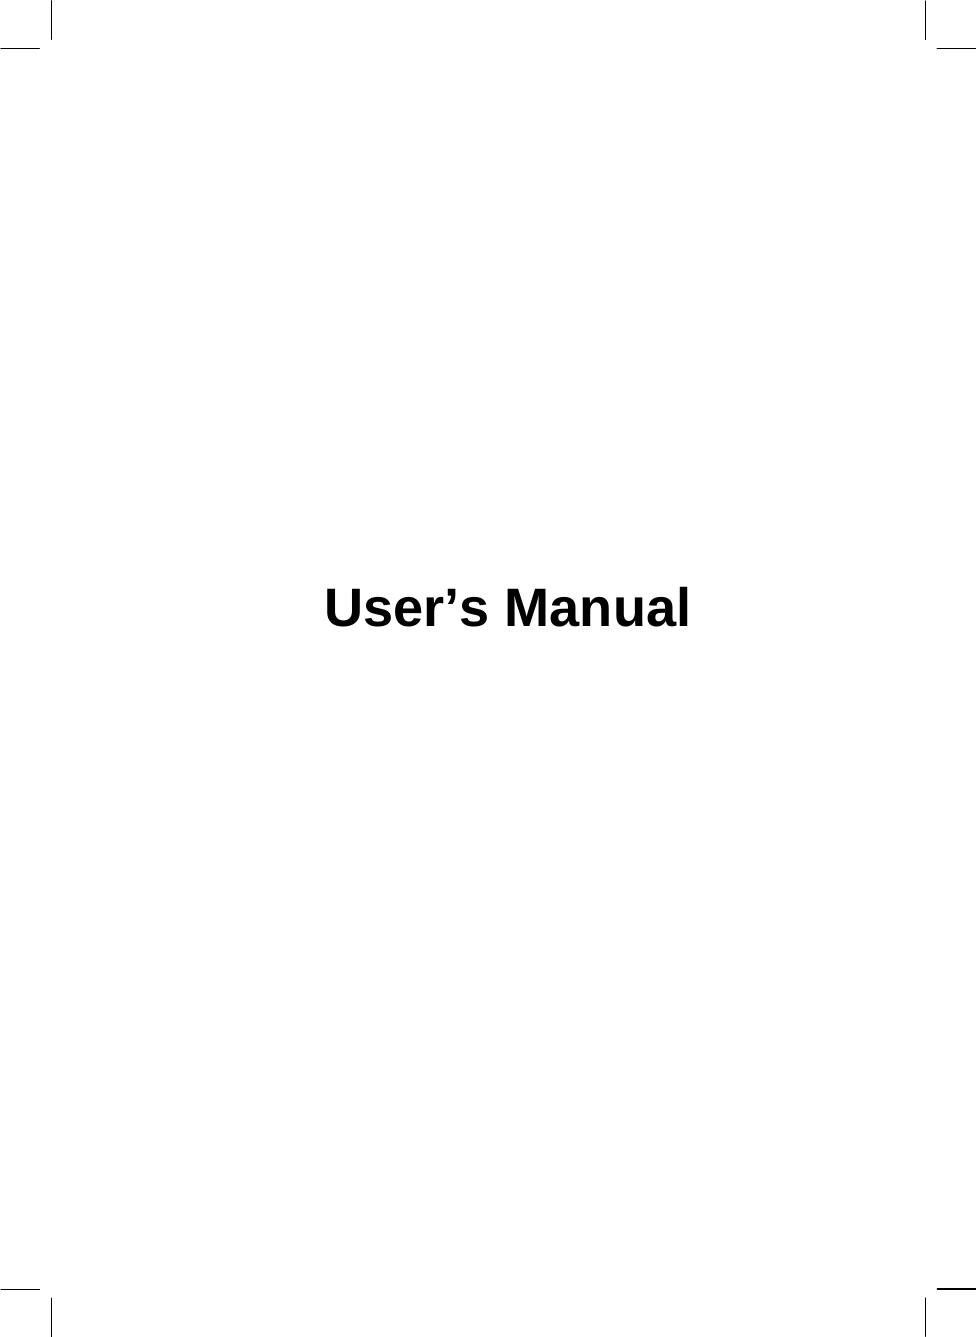            User’s Manual              